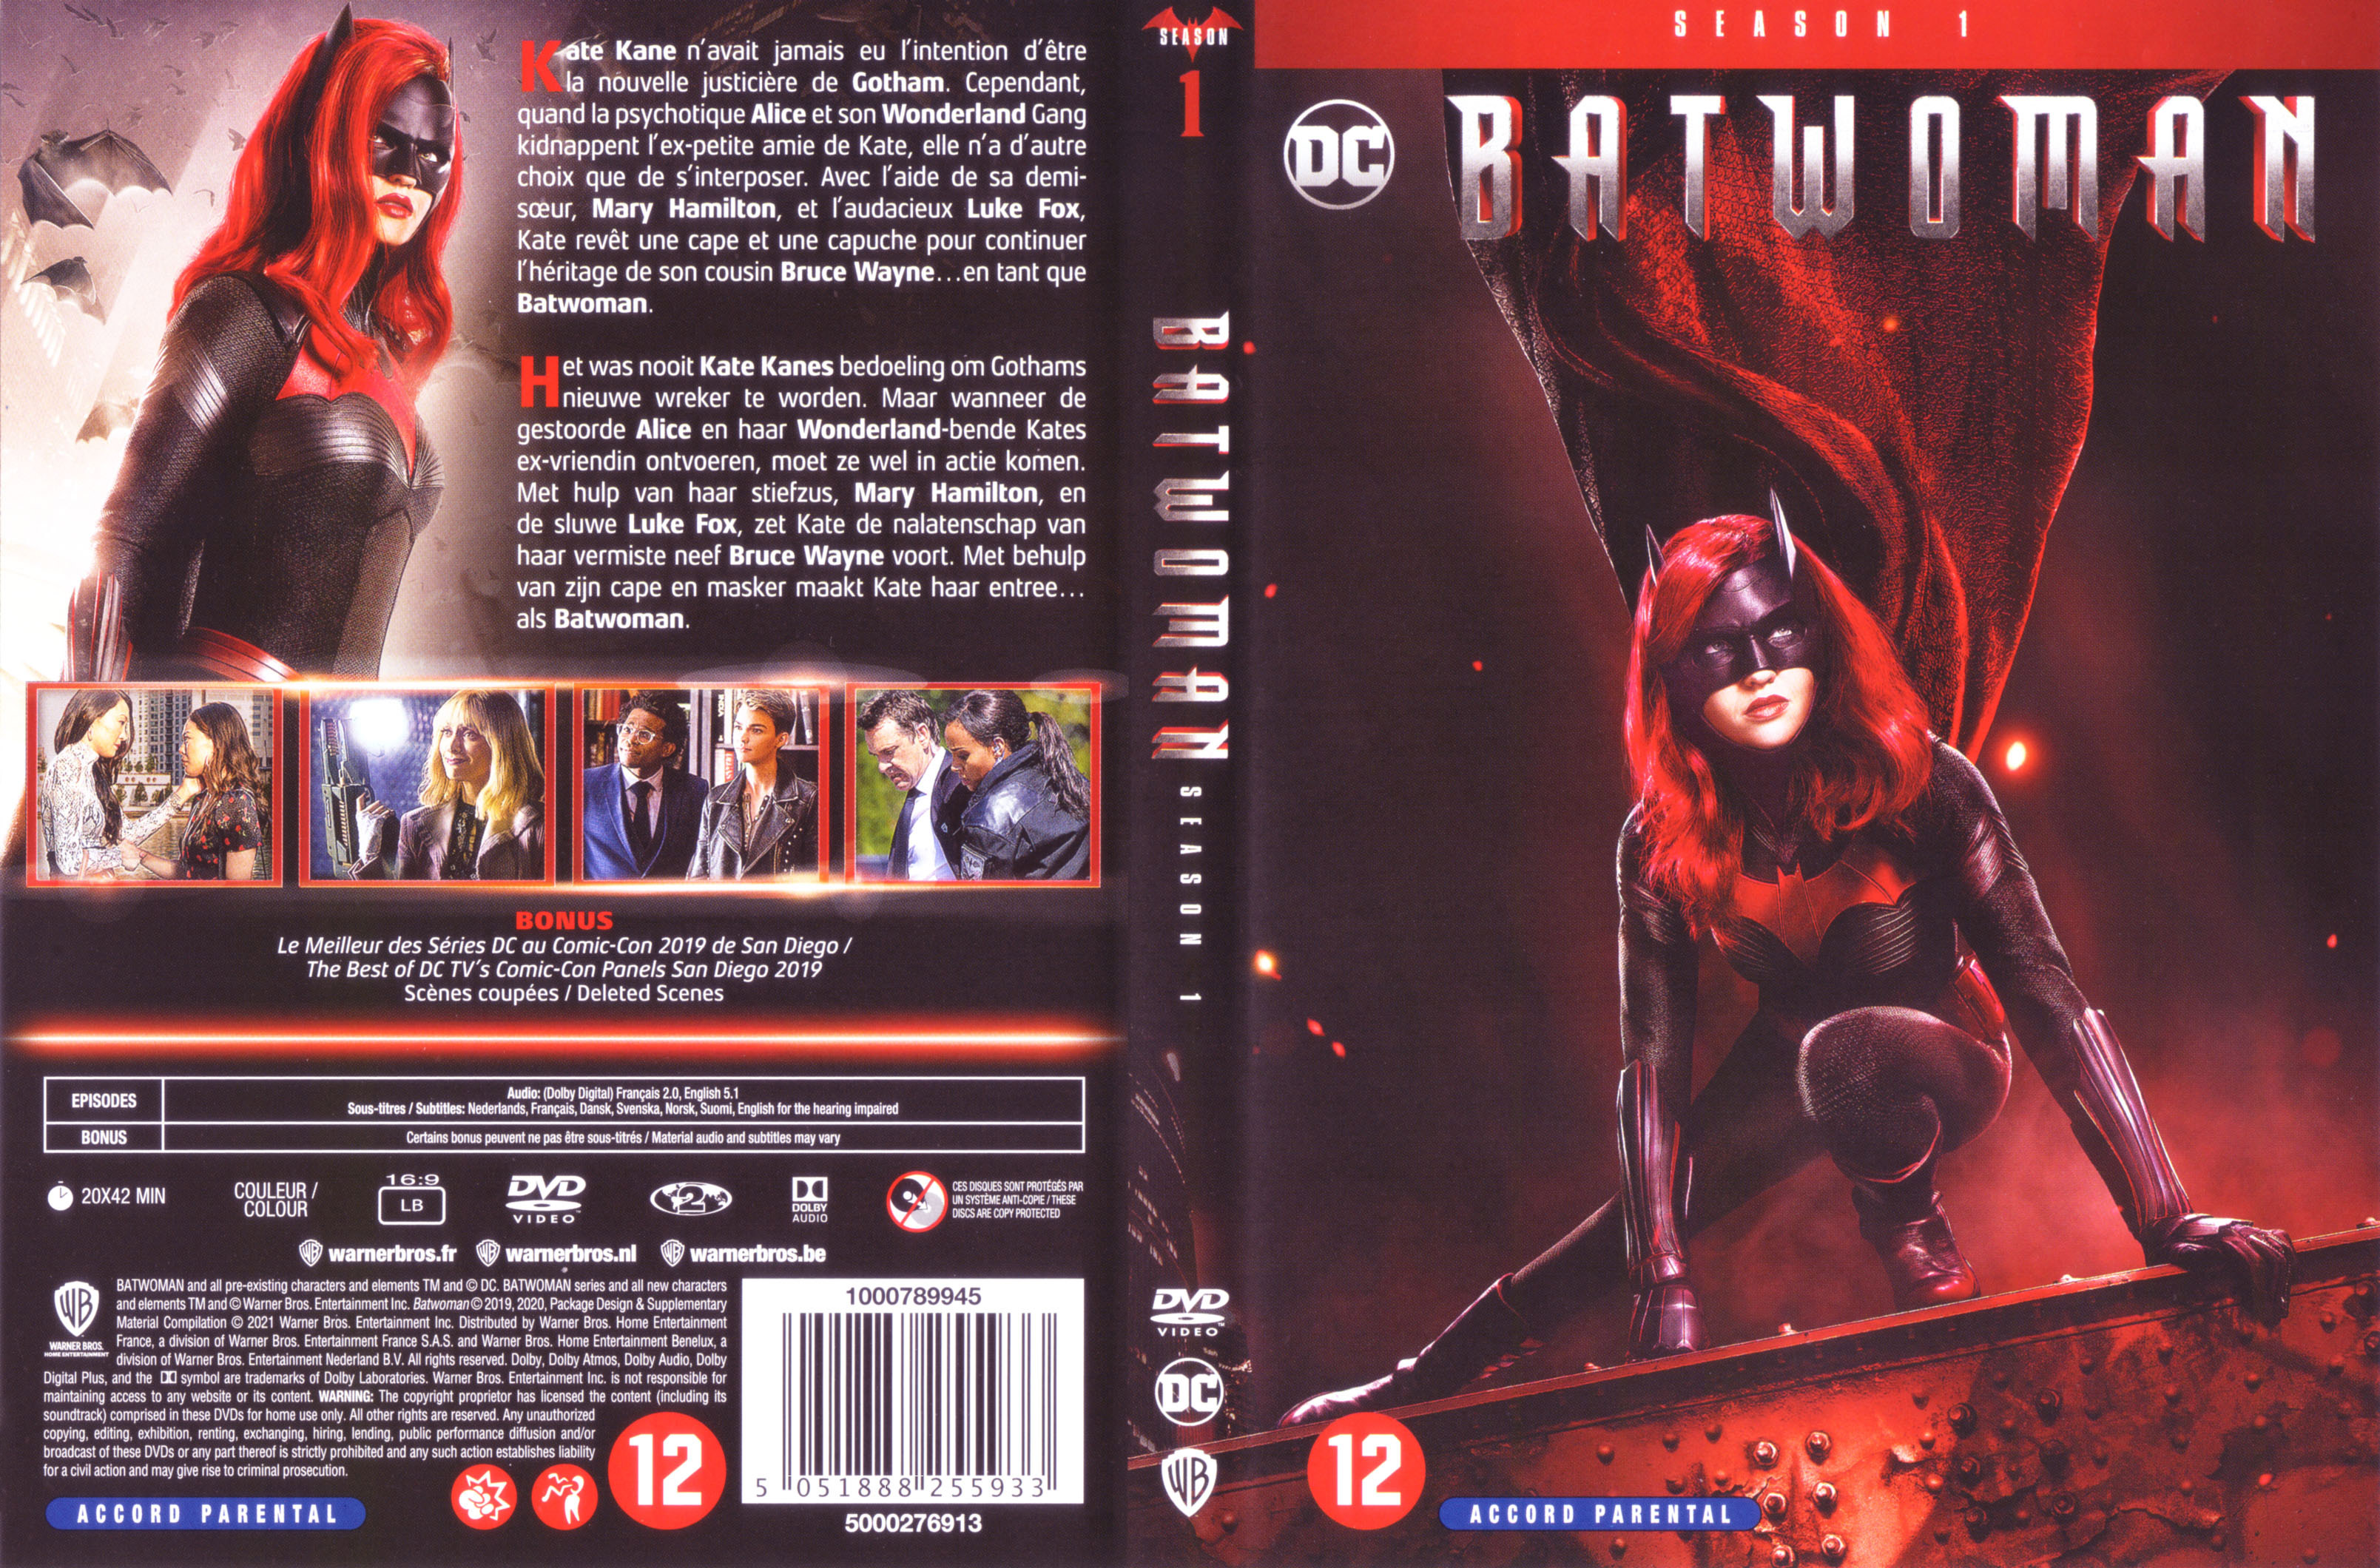 Jaquette DVD Batwoman saison 1